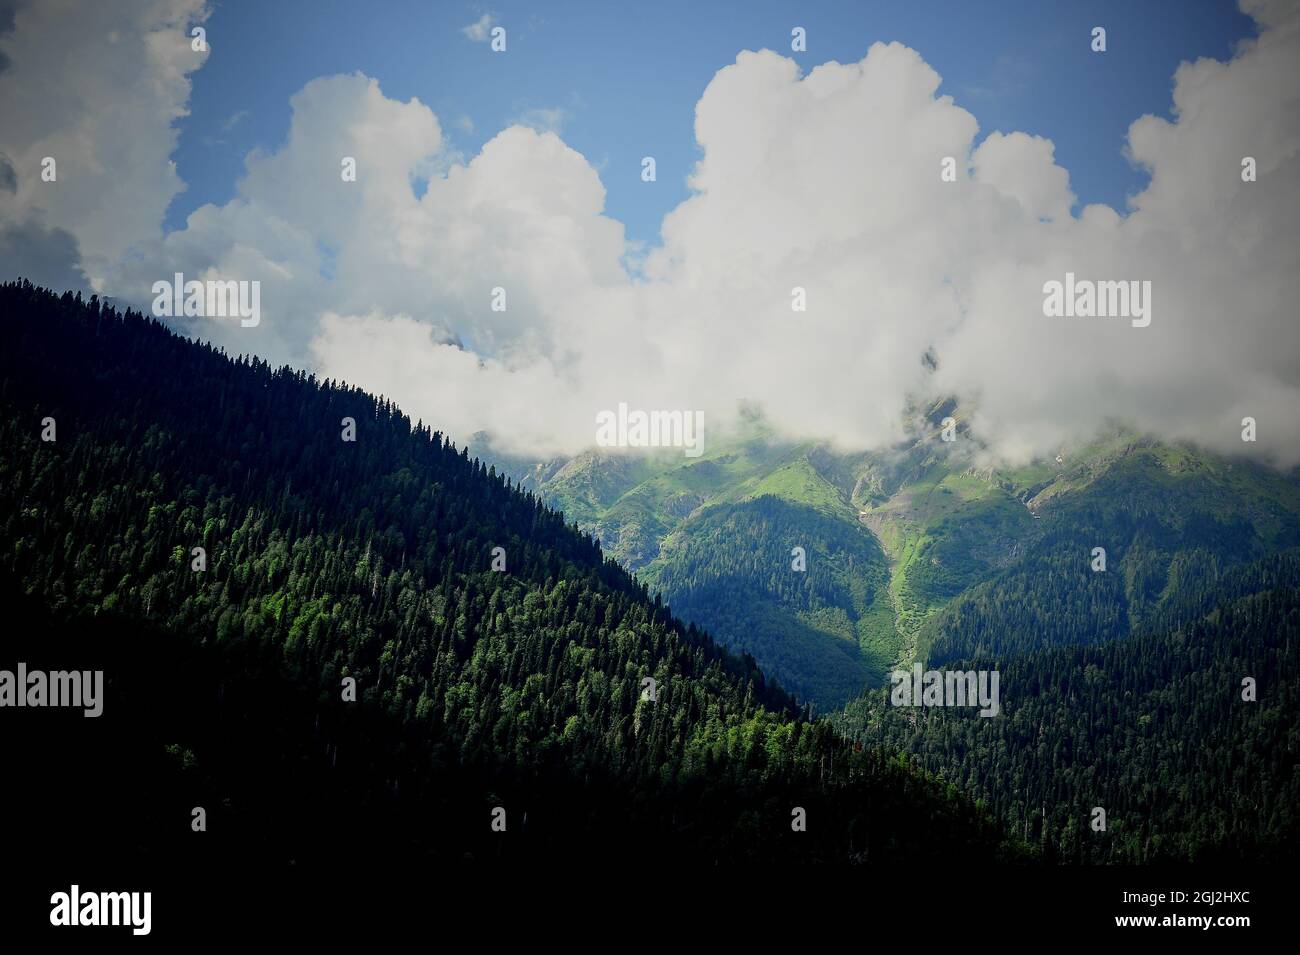 Nuvole nelle cime verdi delle montagne. Abkhazia, il paese dell'anima. Foto Stock